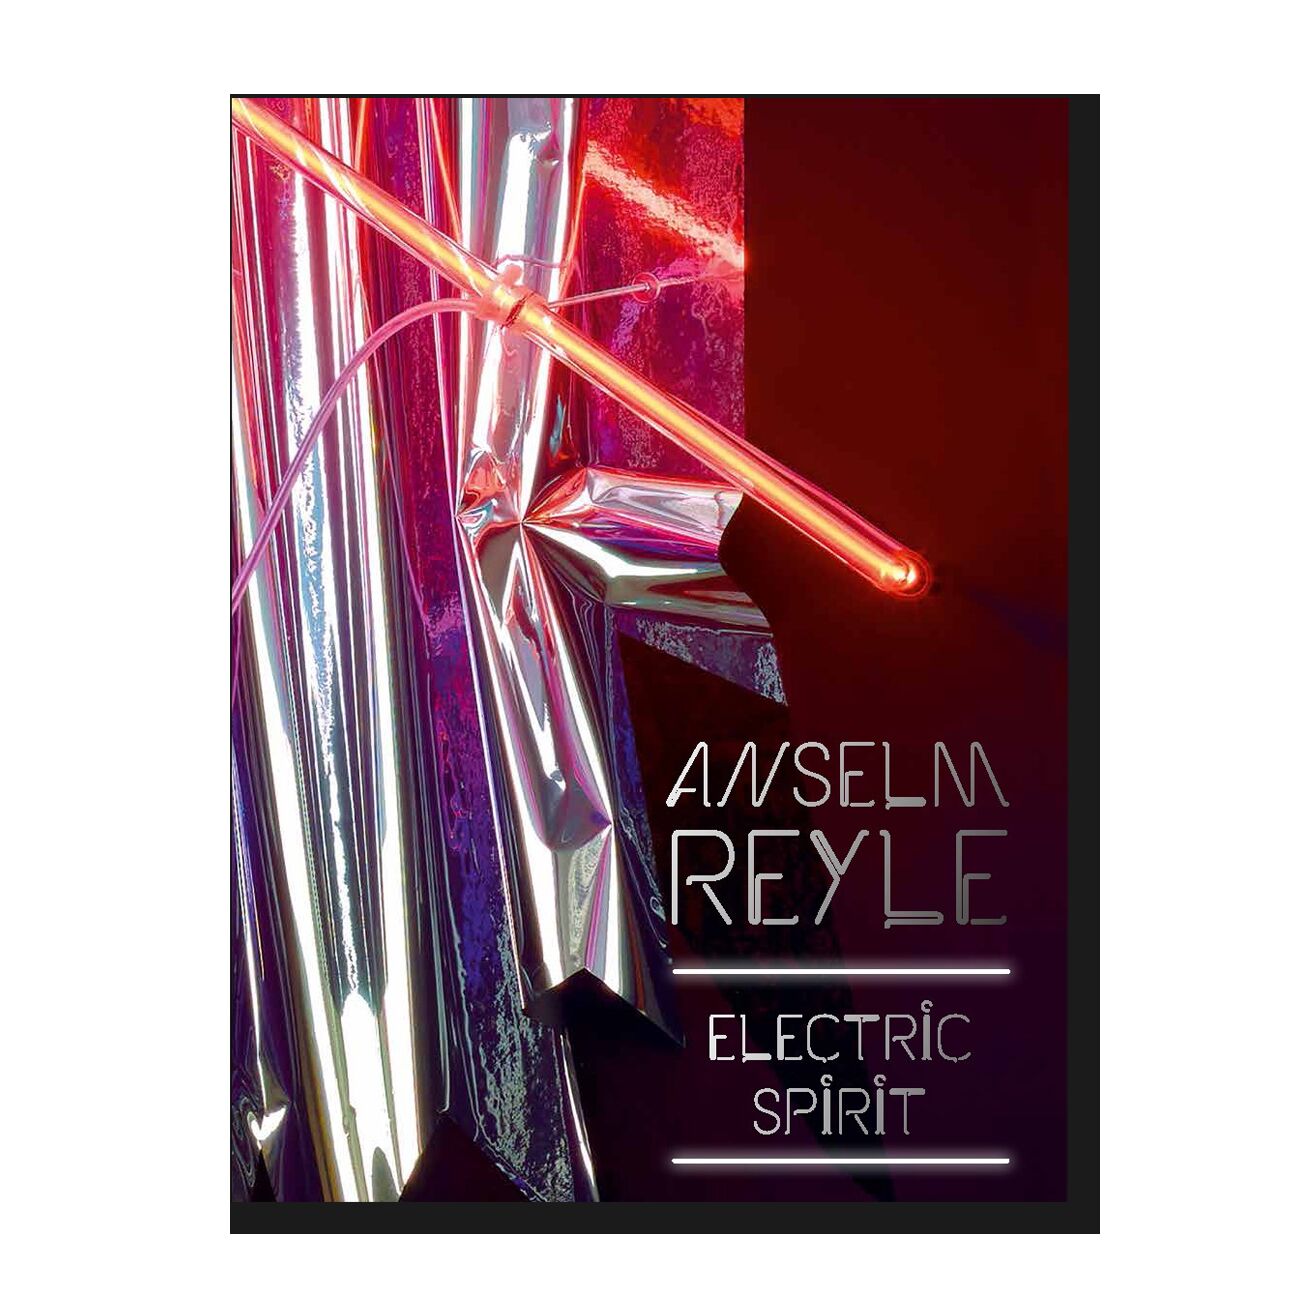 каталог Anselm Reyle "Electric spirit"